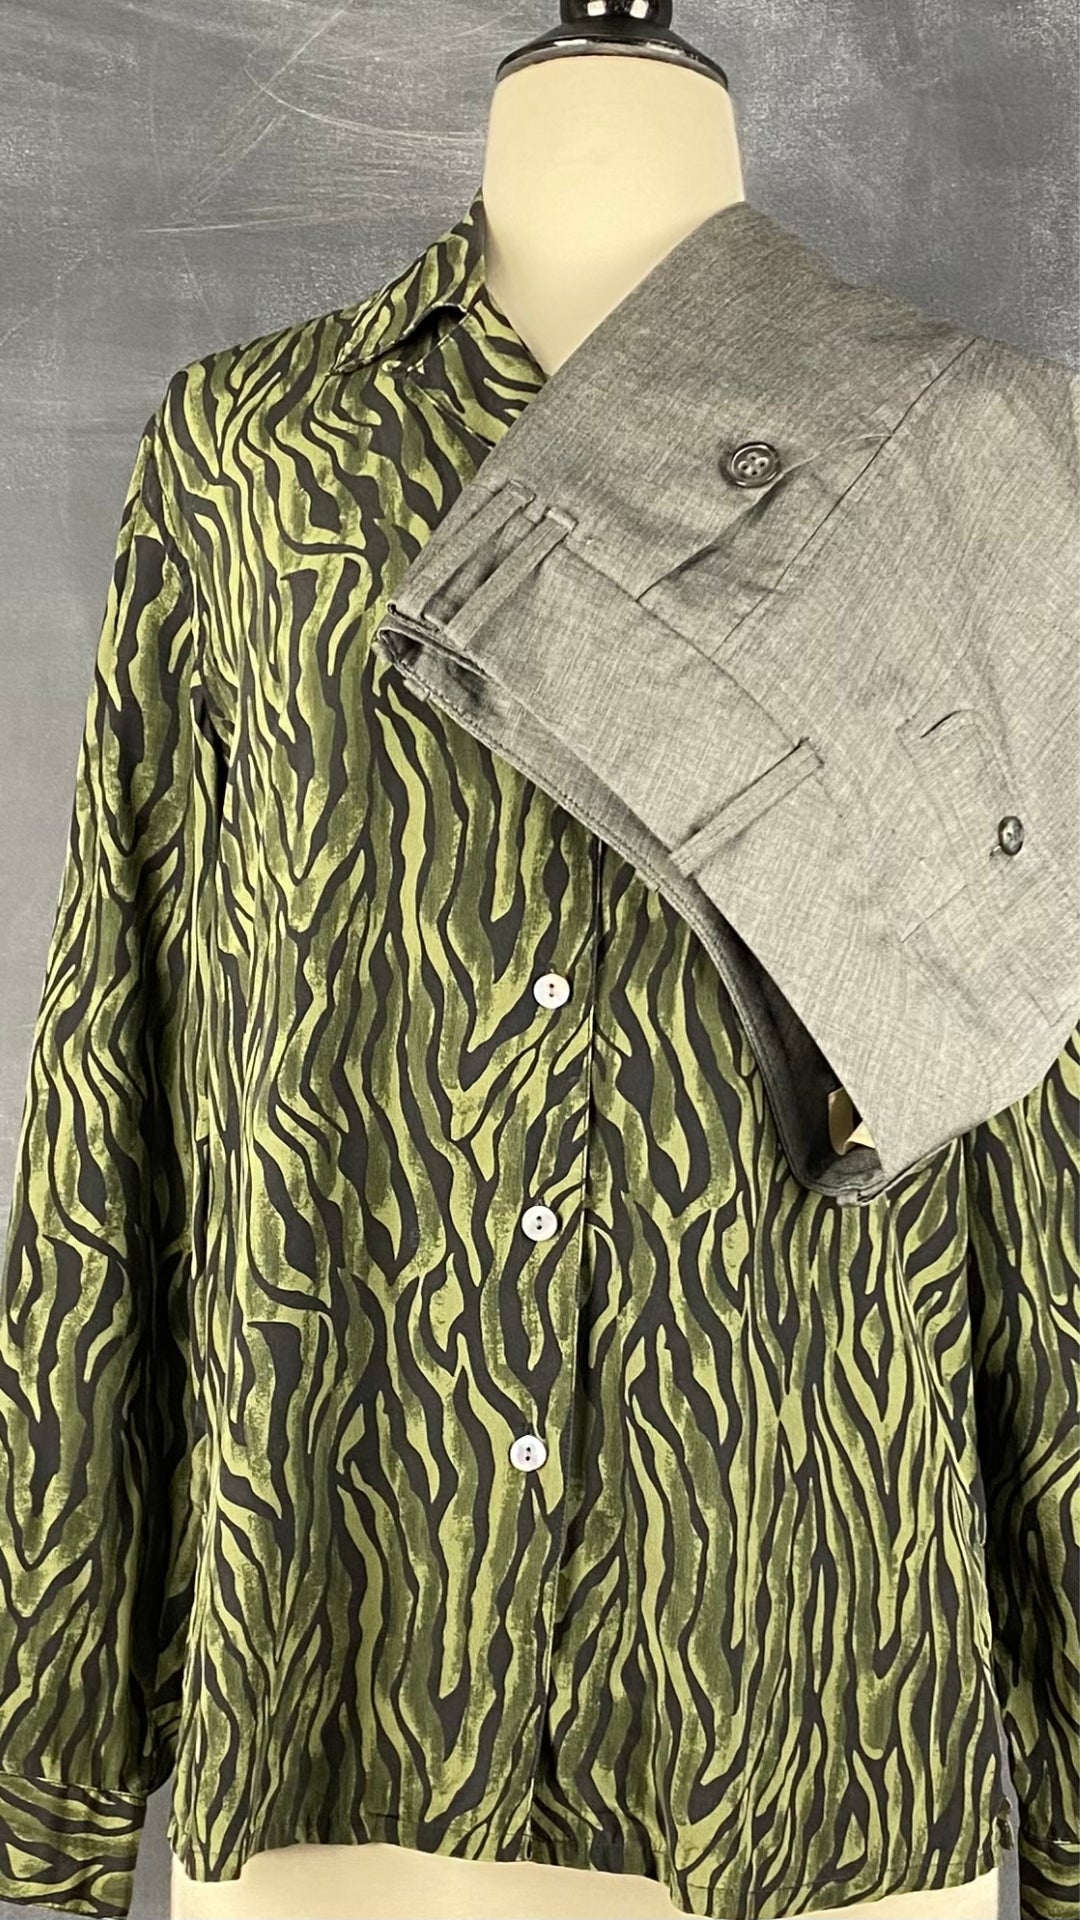 Pantalon gris droit fluide Gardeur, taille estimée à 6. Vue de l'agencement avec le chemisier en soie à zébrures vertes et noires.